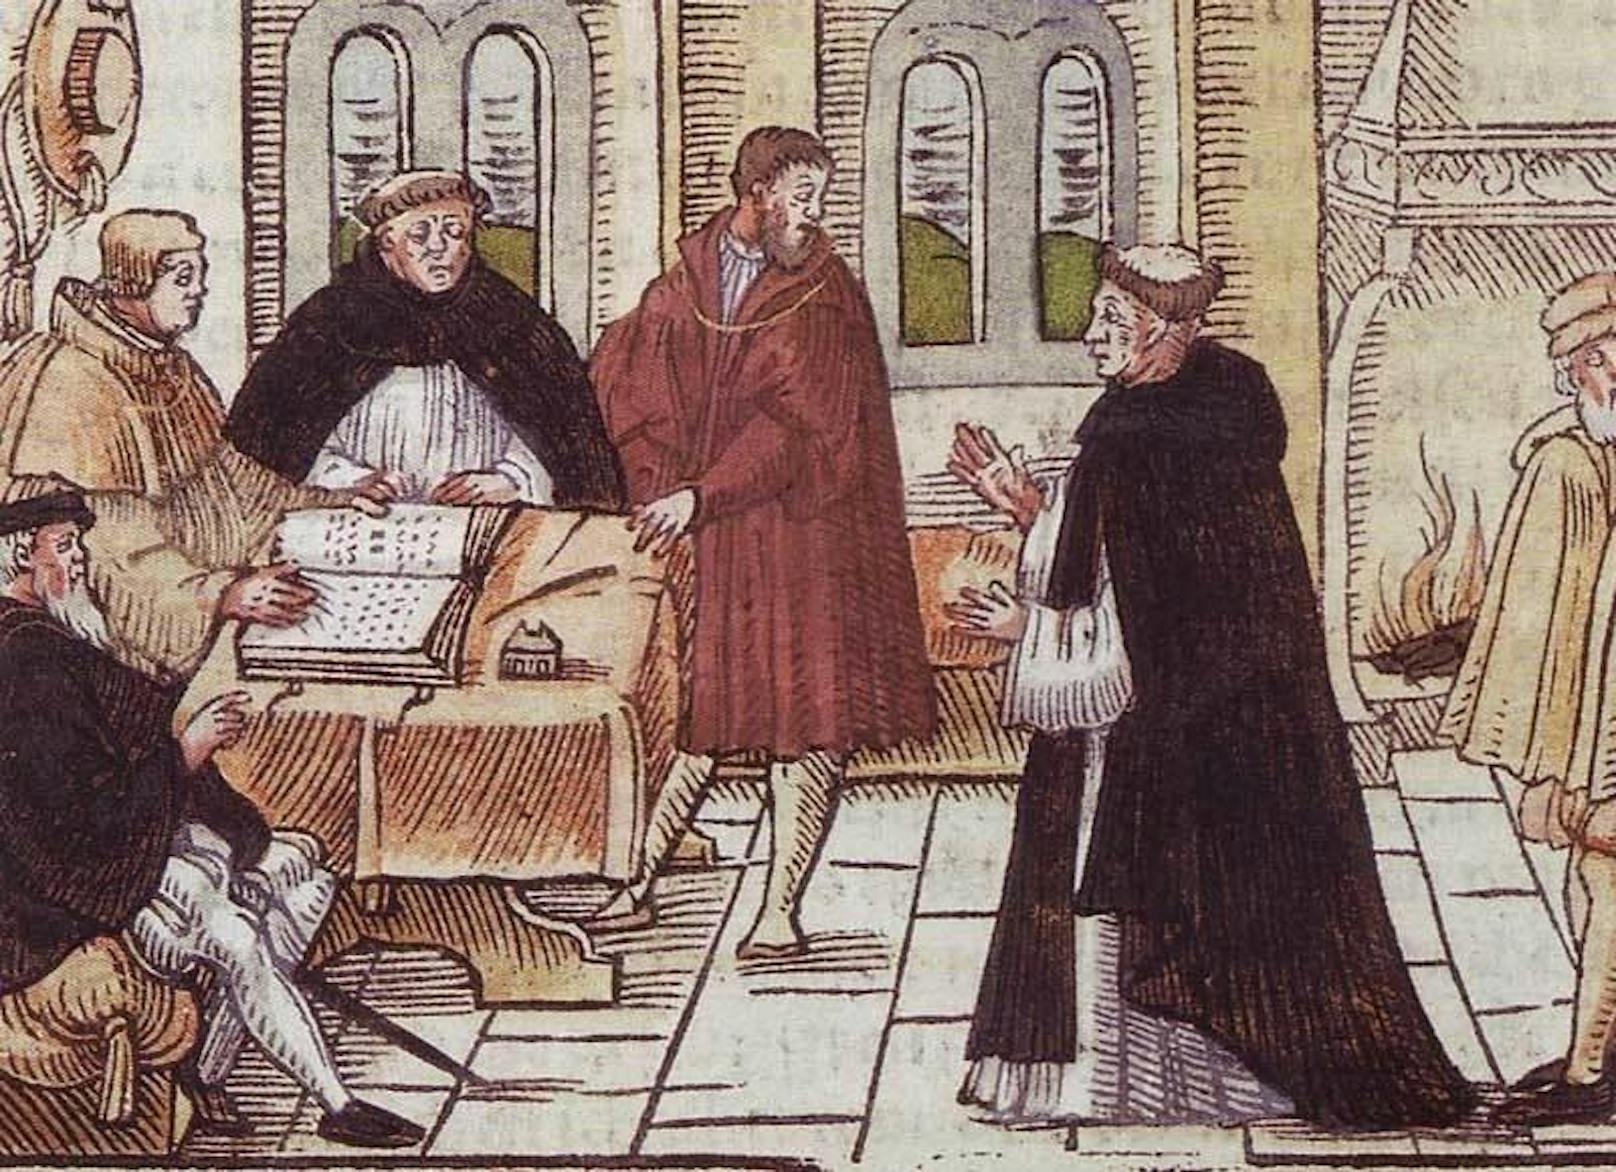 Martin Luther (1483-1546) rechts im Bild (links: Thomas von Cajetan, Kardinal und Ordensgeneral der Dominikaner)

Schön ausgedacht ist halb gesagt, zeigt die Geschichte. Denn der Ausspruch ist sicher nicht von Luther. Ein Satz übers Essen, den Luther wirklich gesagt hat: "Ich esse, was mir schmeckt, und leid' danach, was ich kann."